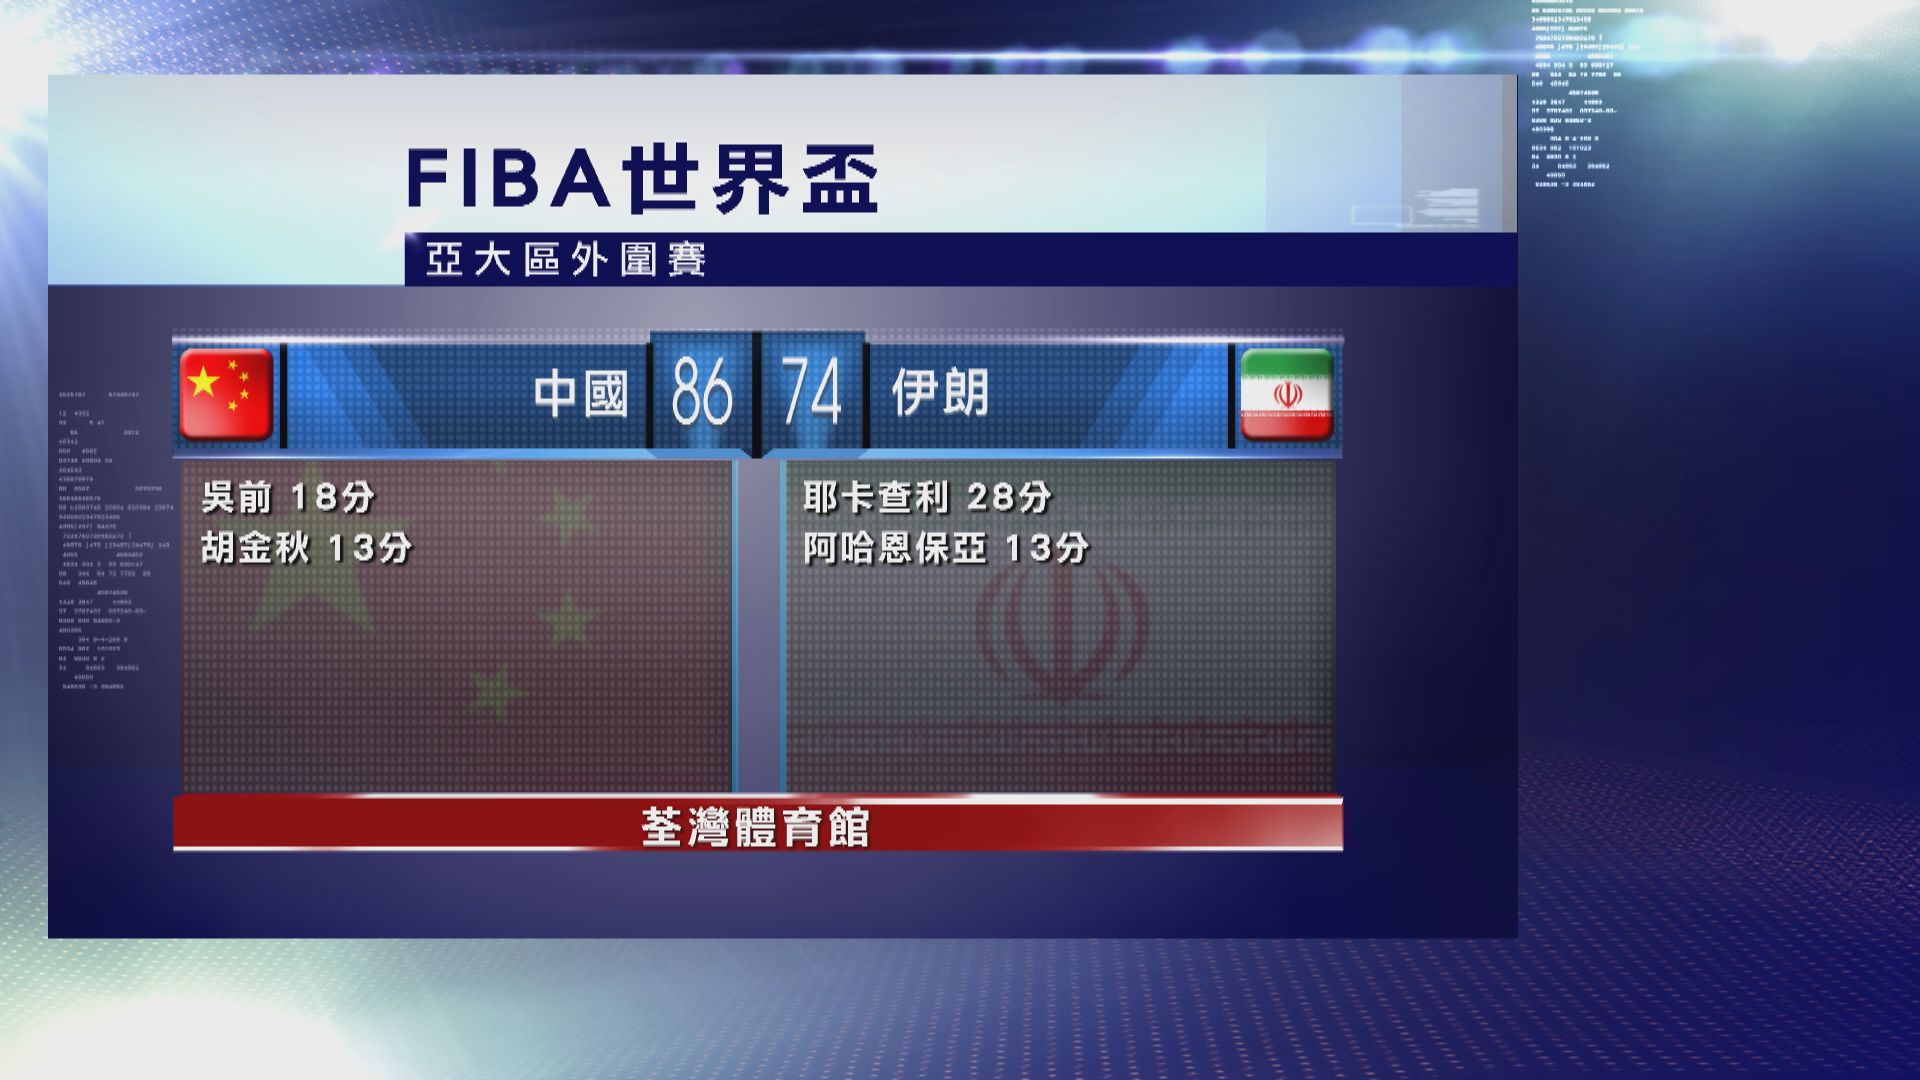 男子籃球世界盃亞大區外圍賽　中國 86:74 伊朗